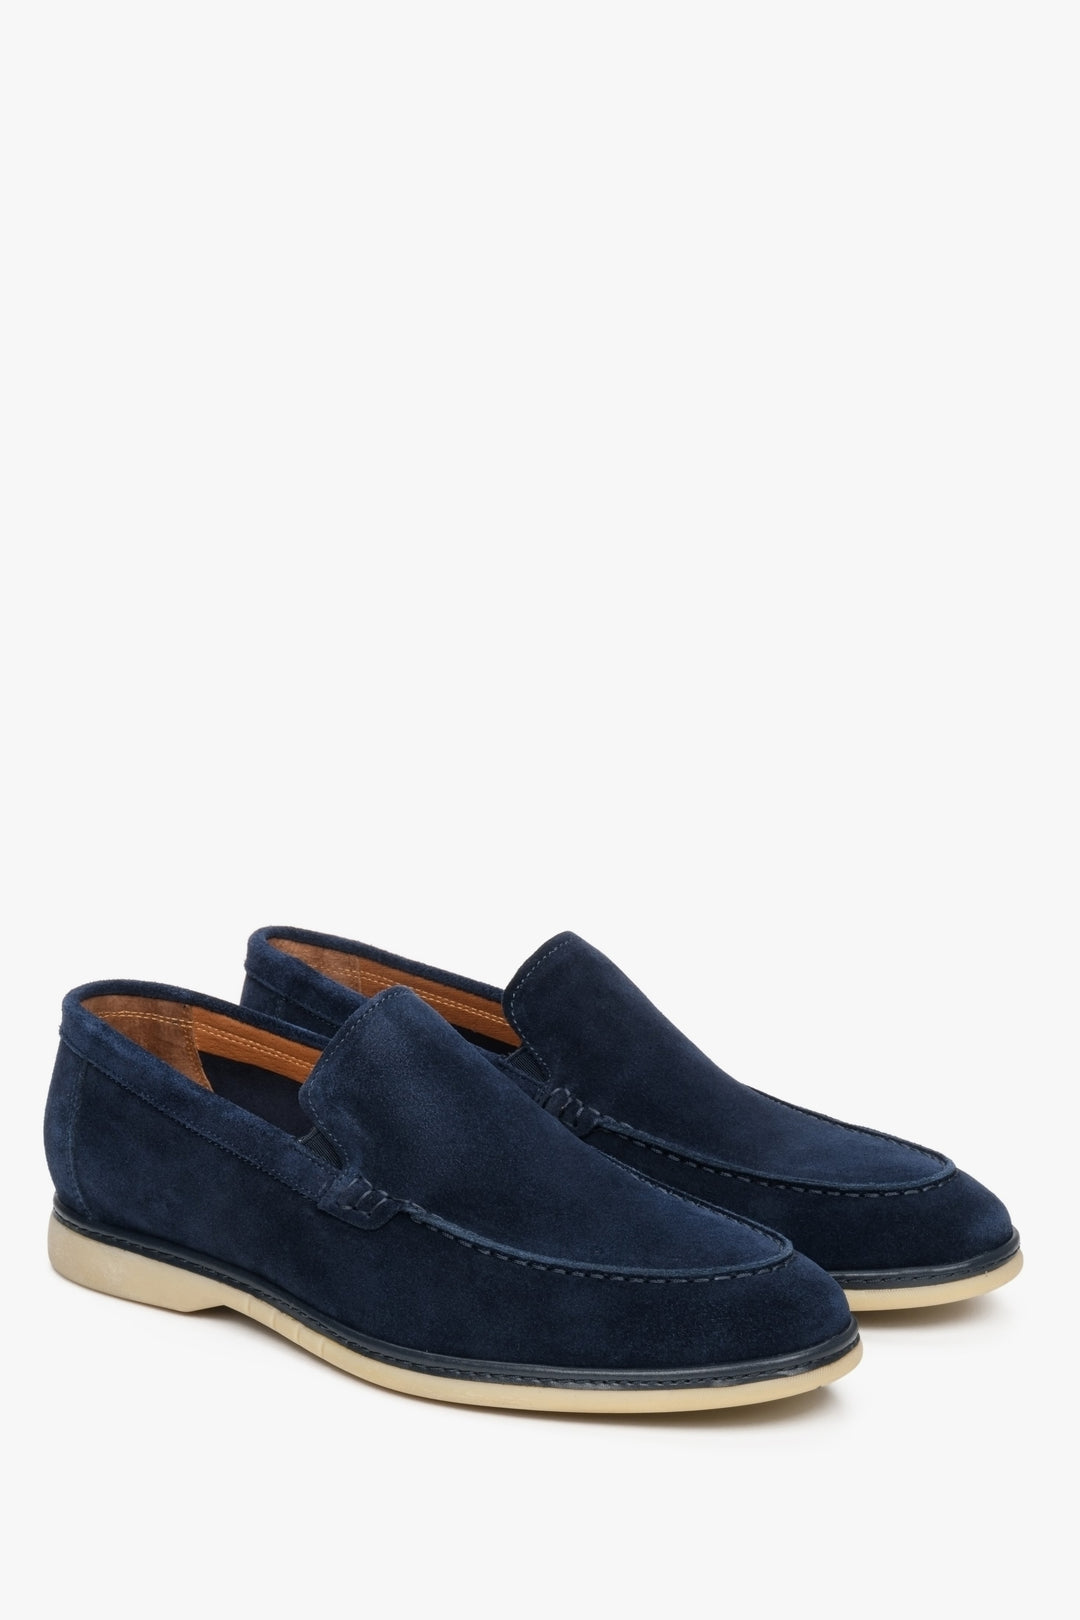 Men's Navy Blue Loafers made of Genuine Velour for Fall Estro ER00112568.